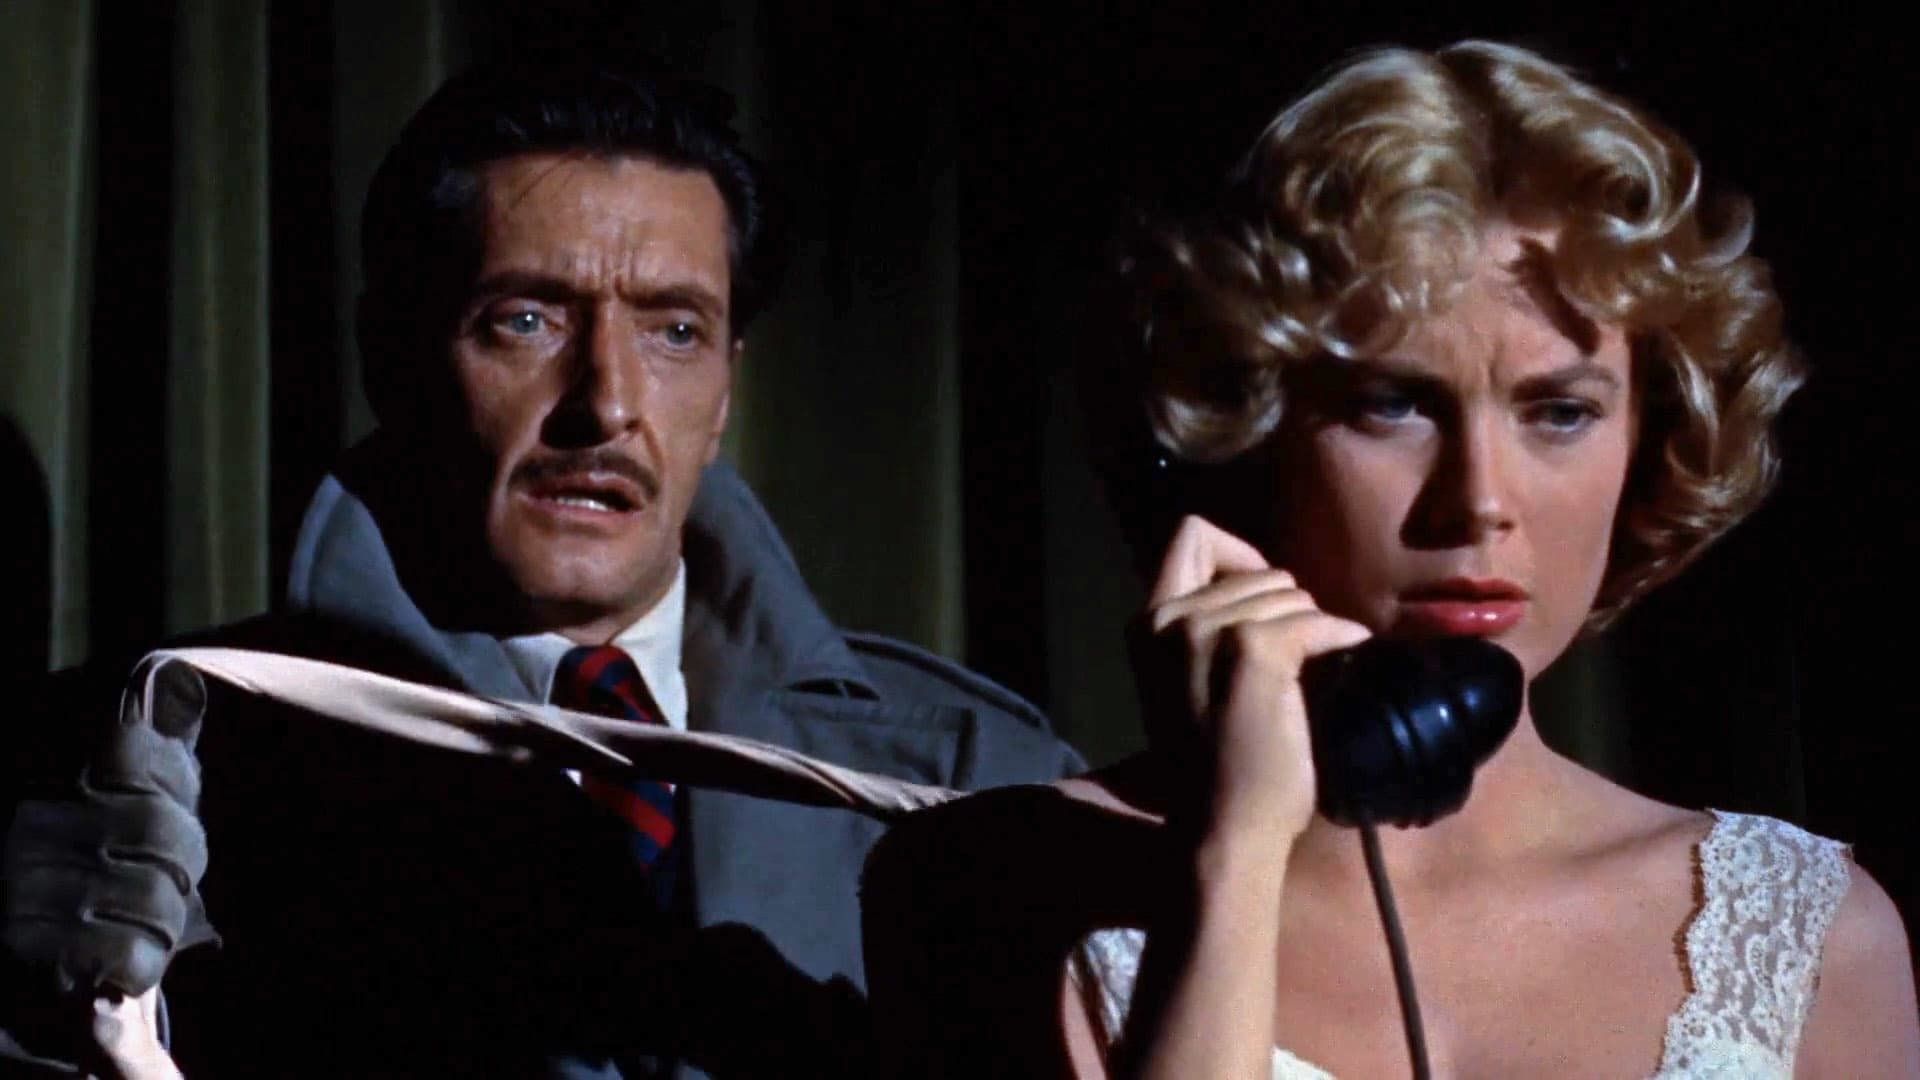 Gyilkosság telefonhívásra (1954)